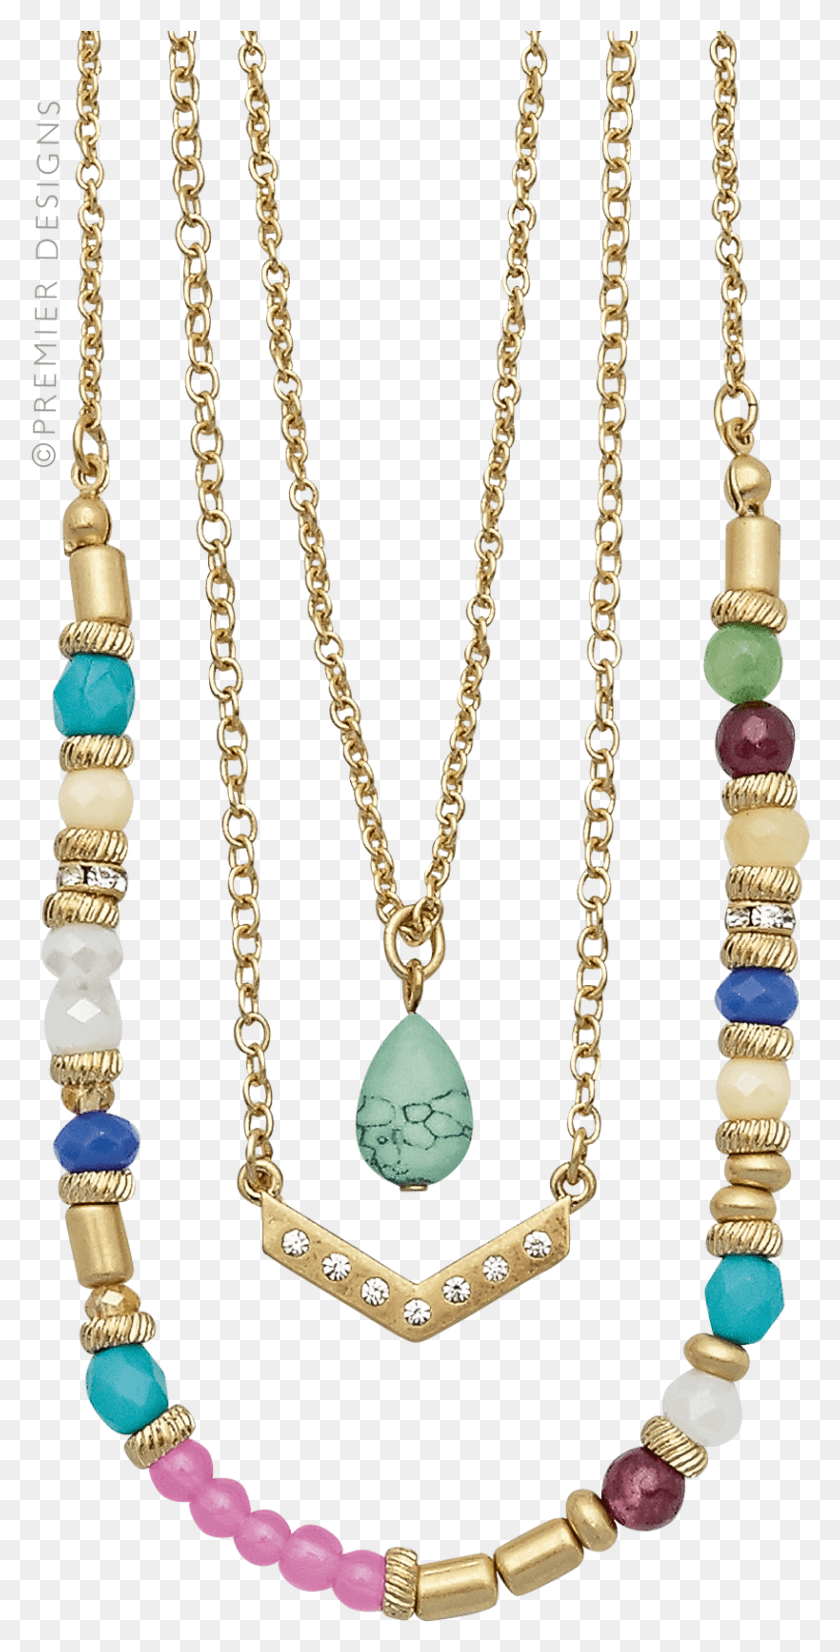 819x1672 Premier Designs Jolie Ожерелье, Ювелирные Изделия, Аксессуары, Аксессуар Hd Png Скачать